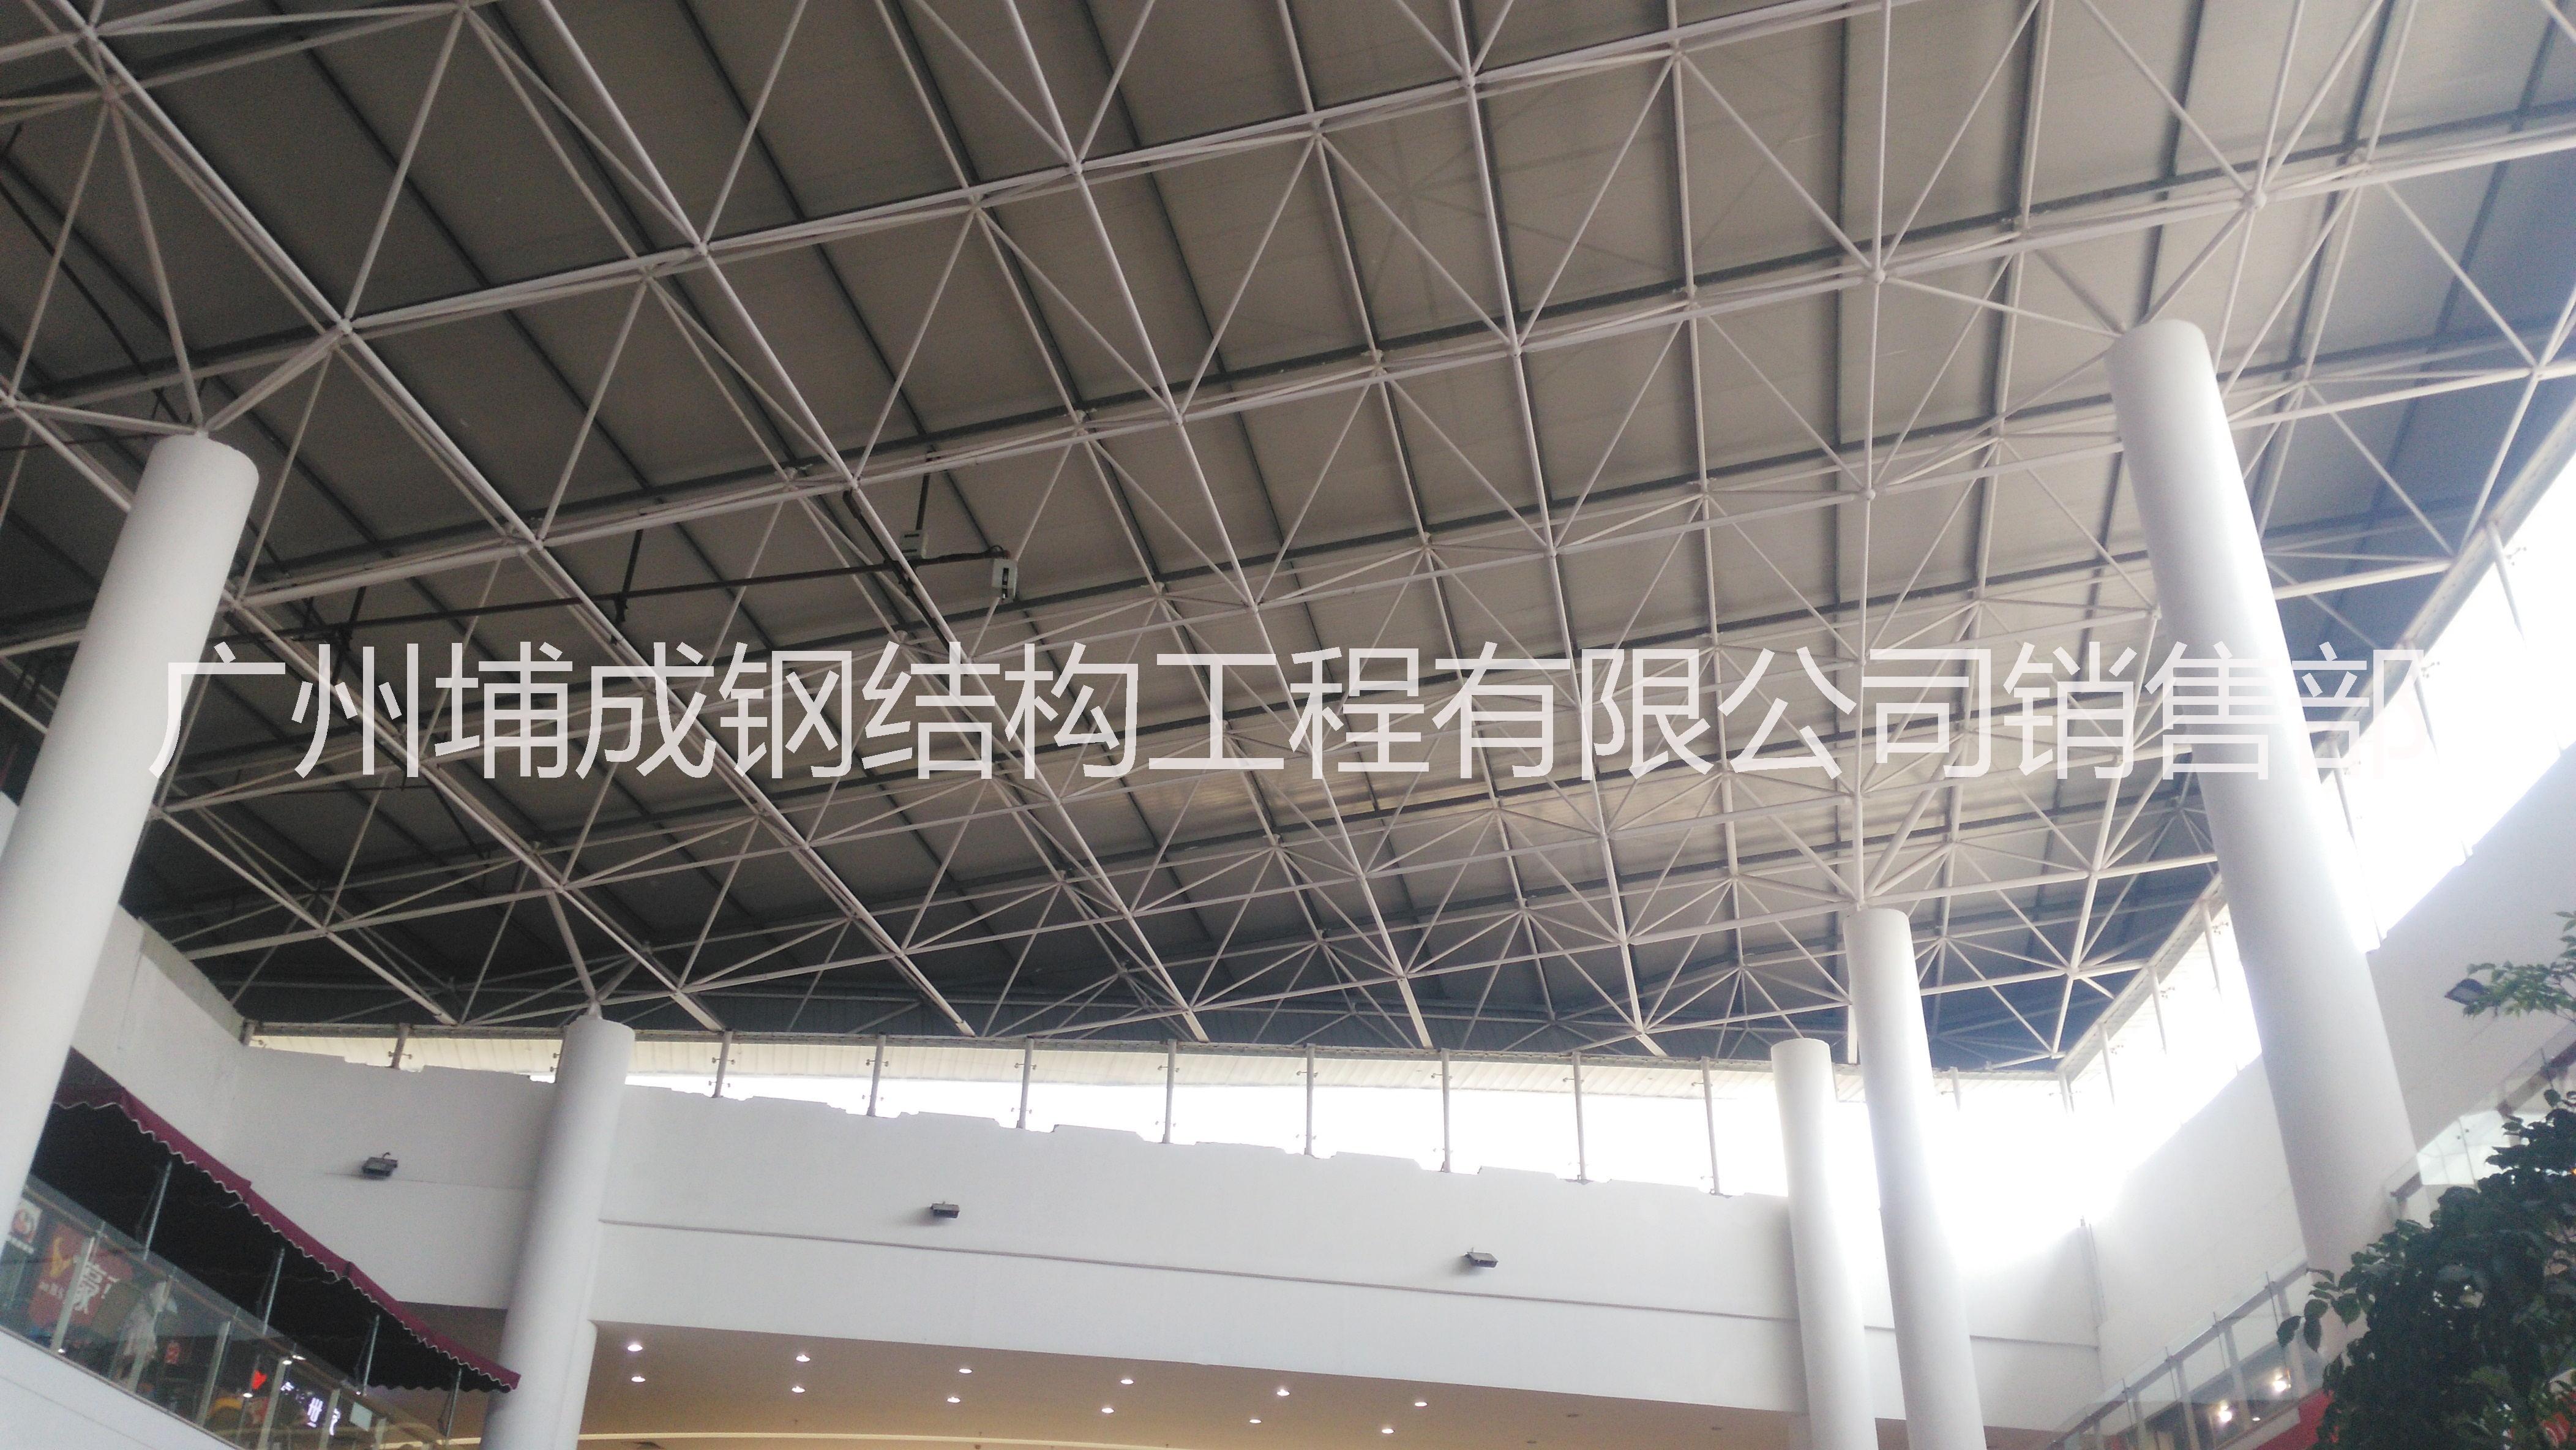 0大跨度广州采光玻璃顶工程,万达玻璃顶施工、报价